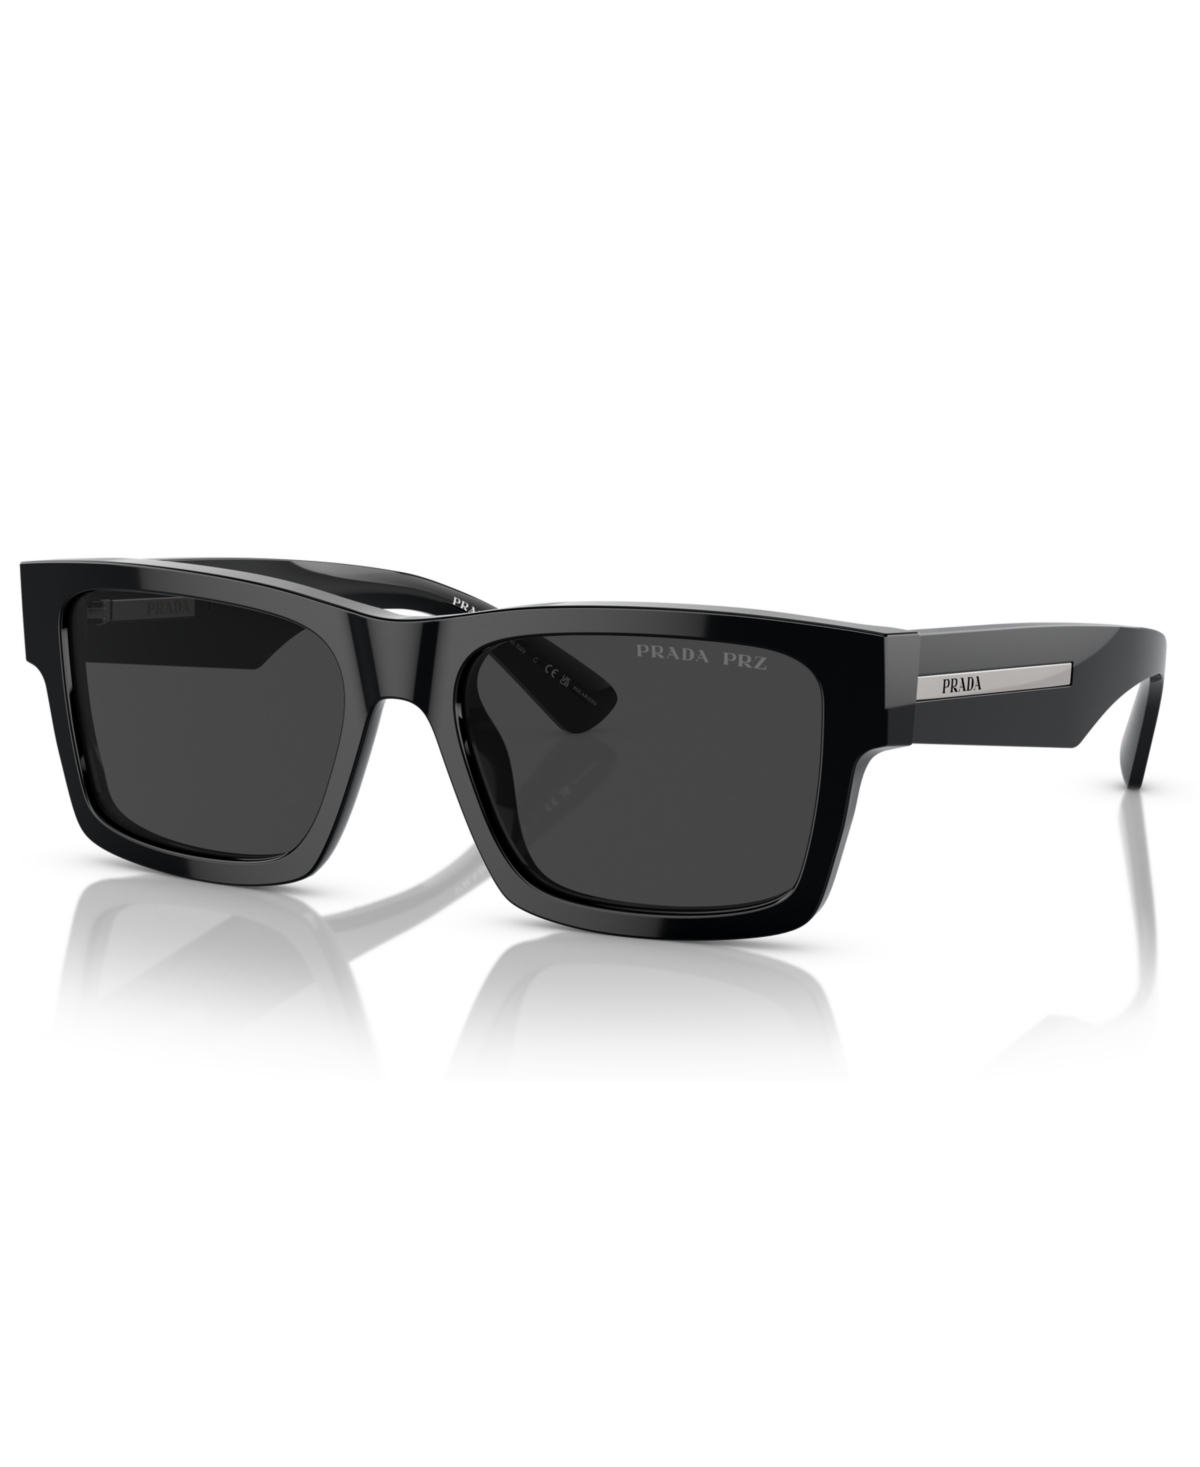 Prada Men's Polarized Sunglasses, Pr 25zs In Burgundy